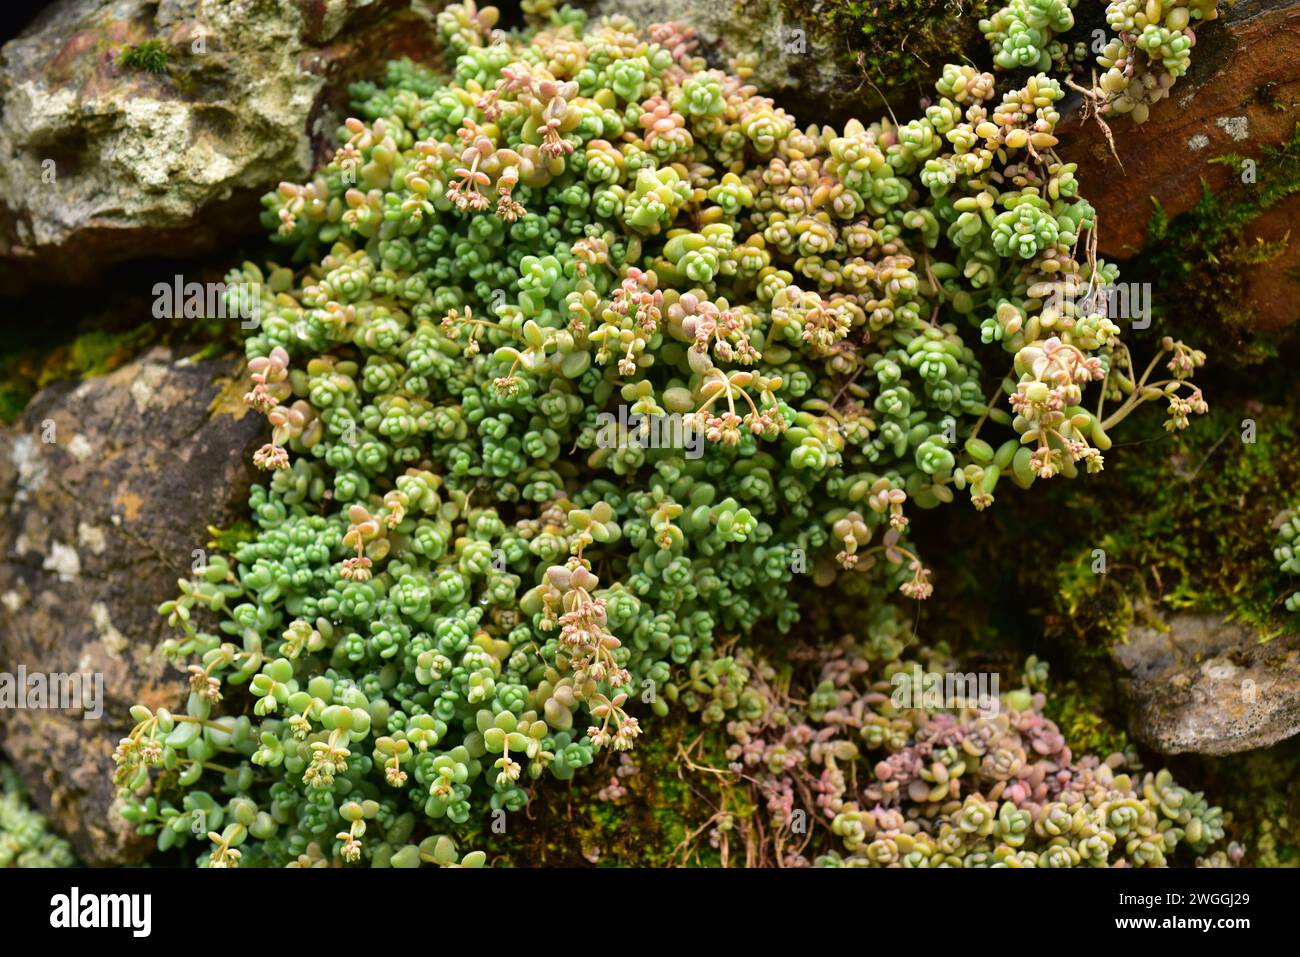 La pierre à feuilles épaisses (Sedum dasyphyllum) est une petite plante vivace originaire de l'Europe méditerranéenne, du sud du Royaume-Uni et du nord-ouest de l'Afrique. Banque D'Images